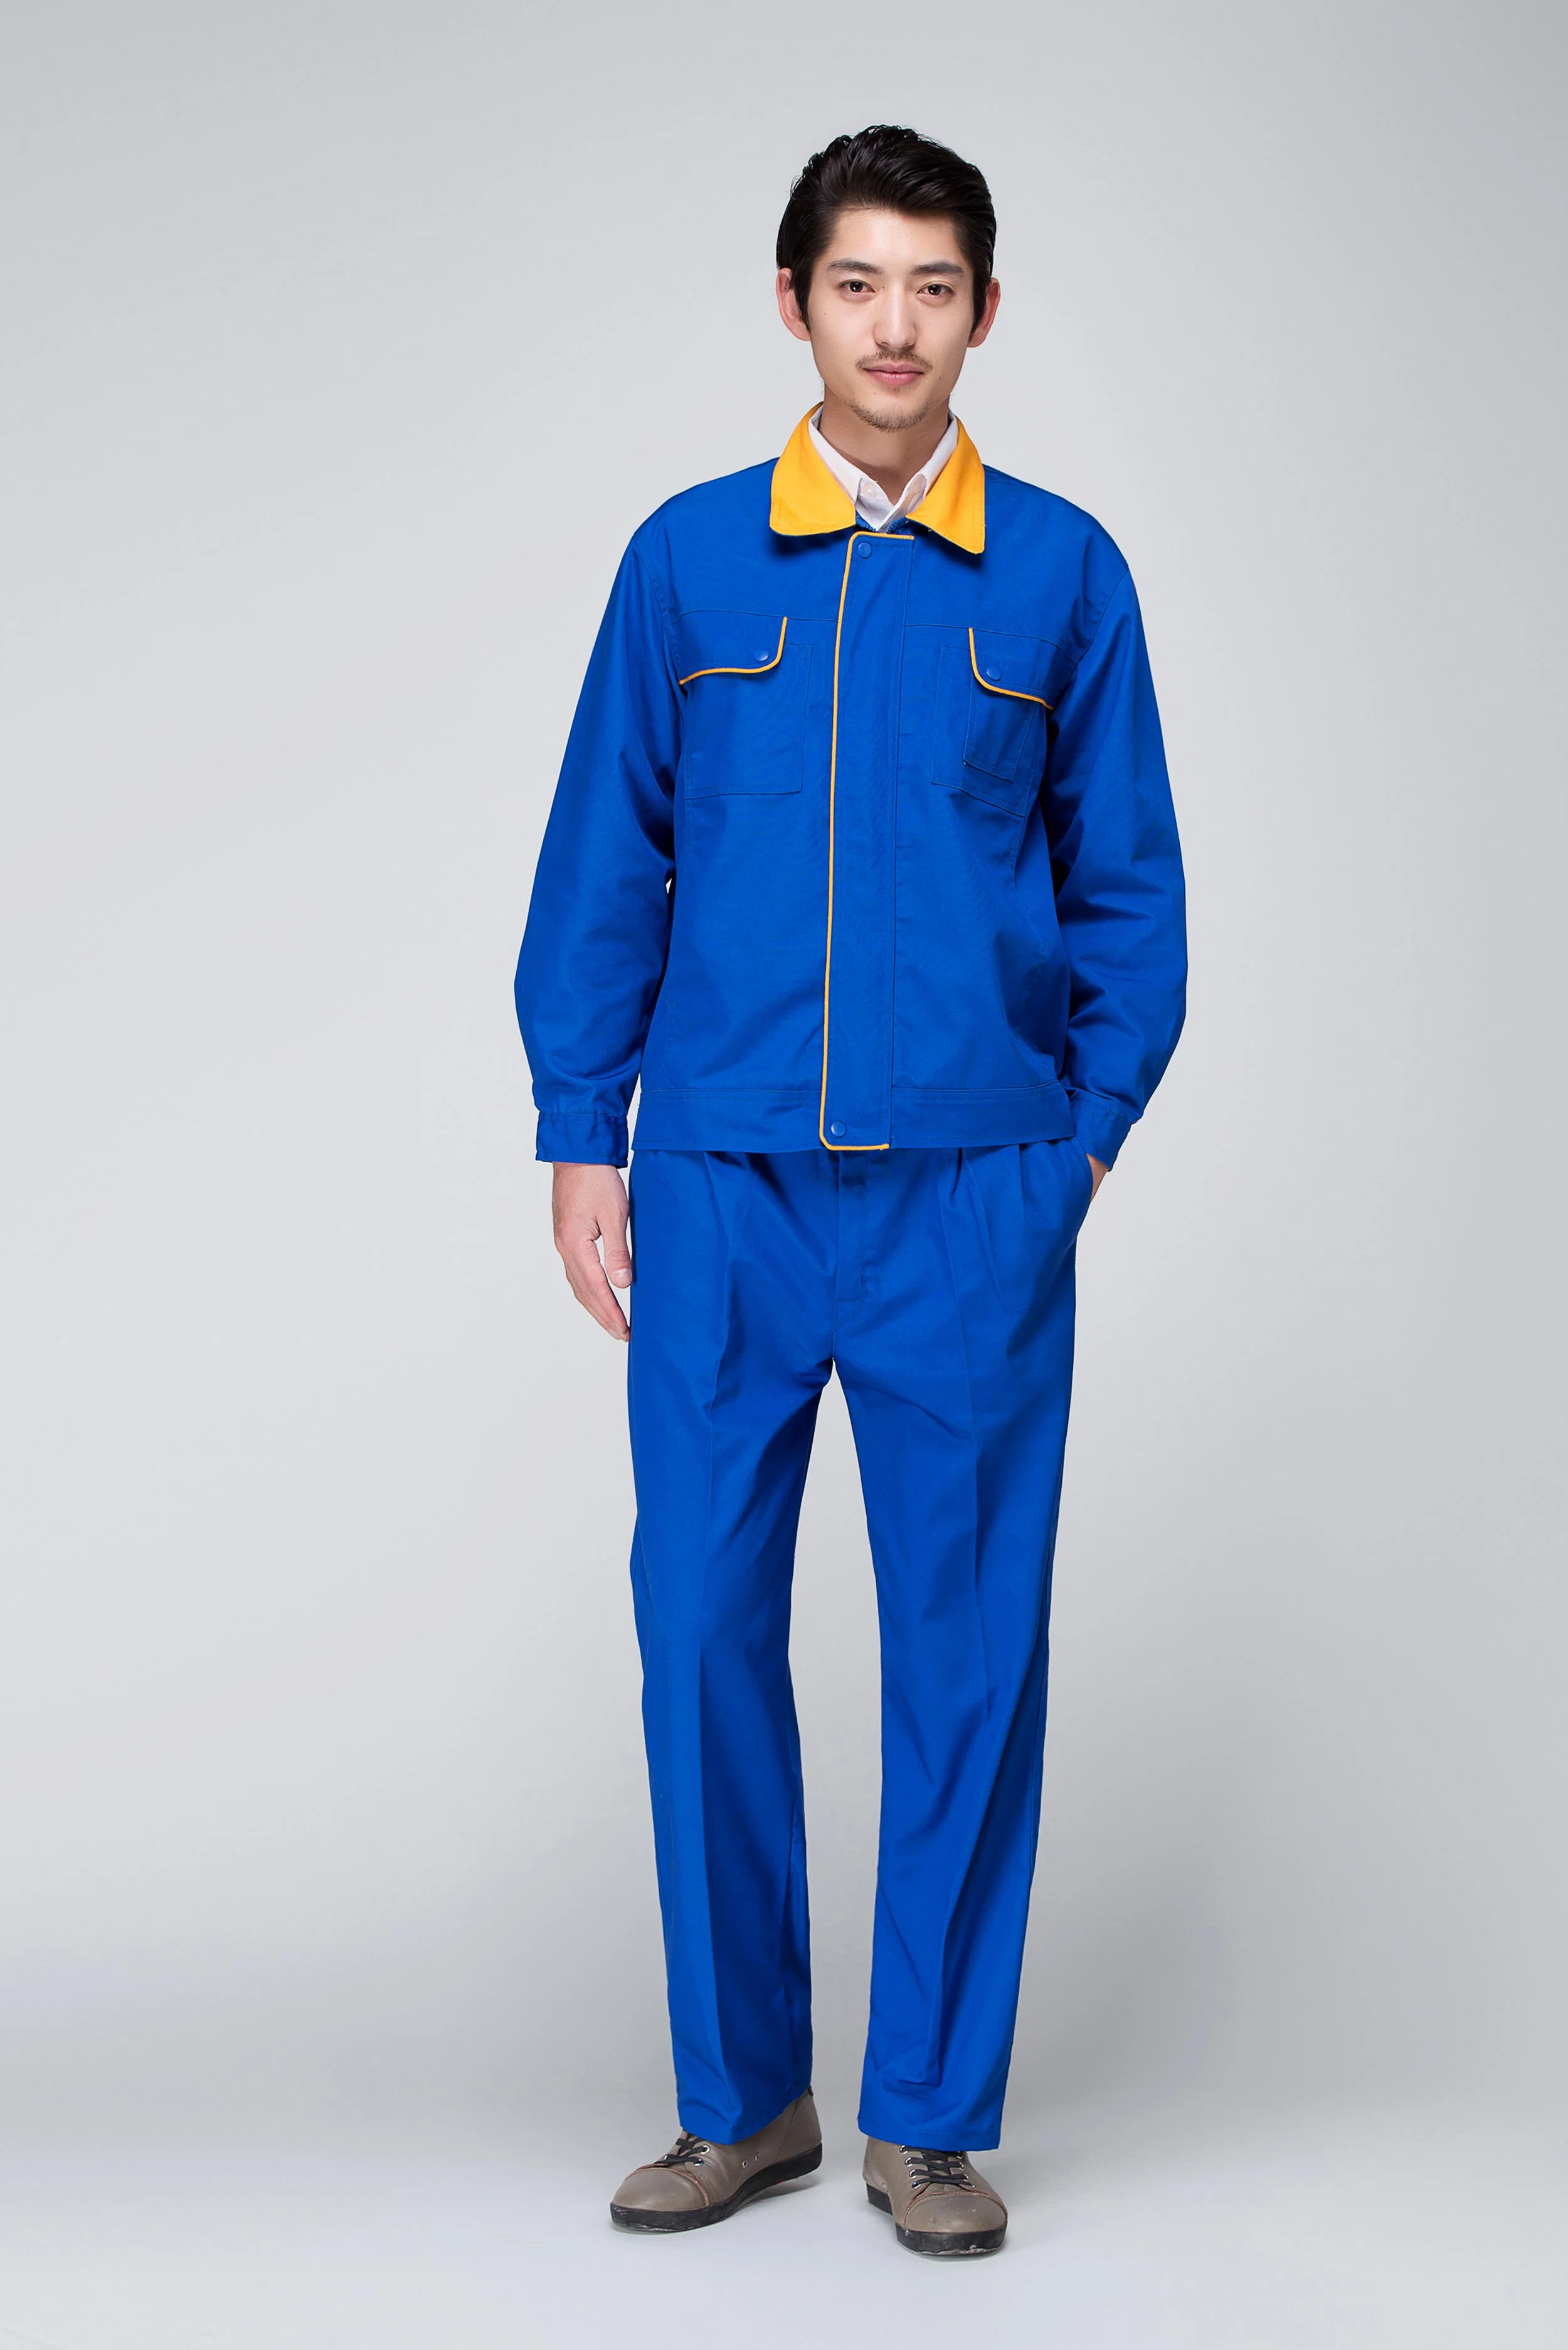 Logotipo personalizado conjuntos de ropa de trabajo Unisex Ropa de trabajo para hombres y mujeres